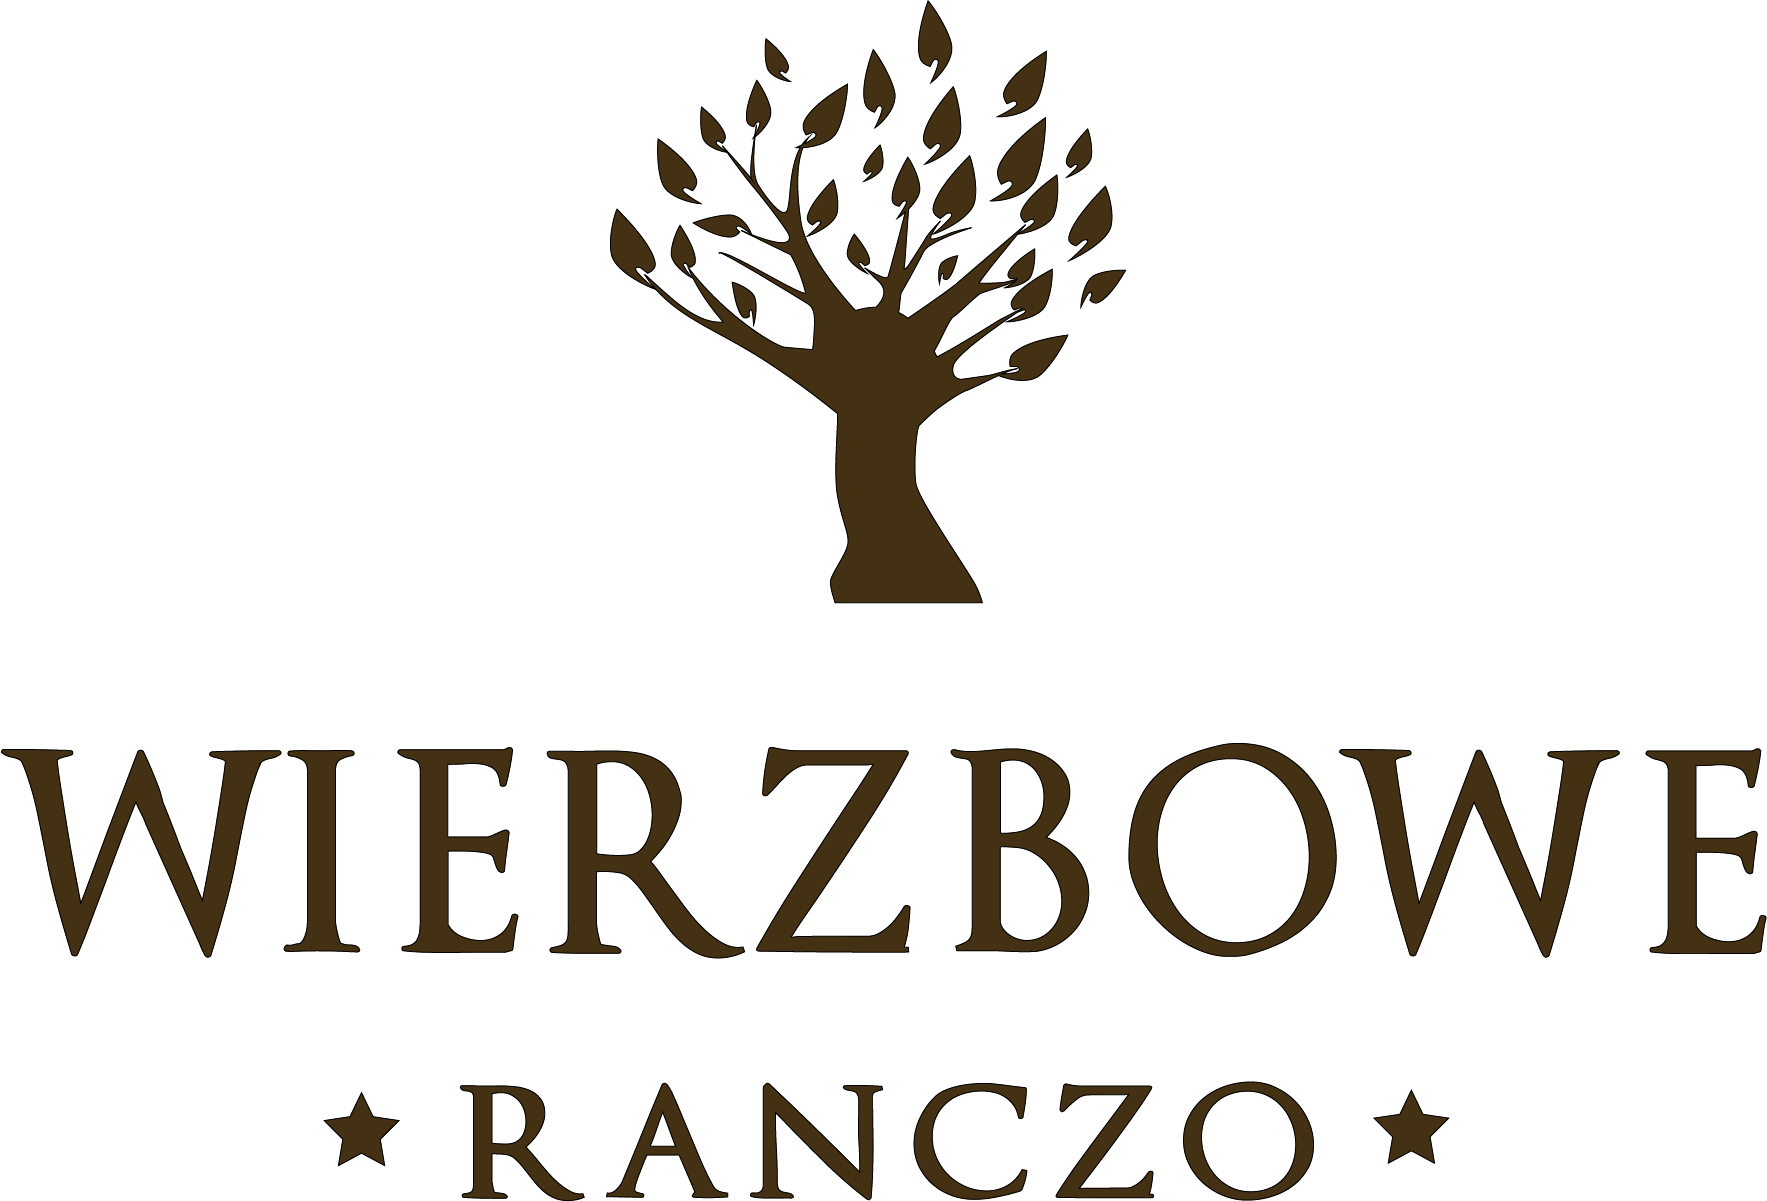 Wierzbowe ranczo - restauracja i nocleg niedaleko Warszawy